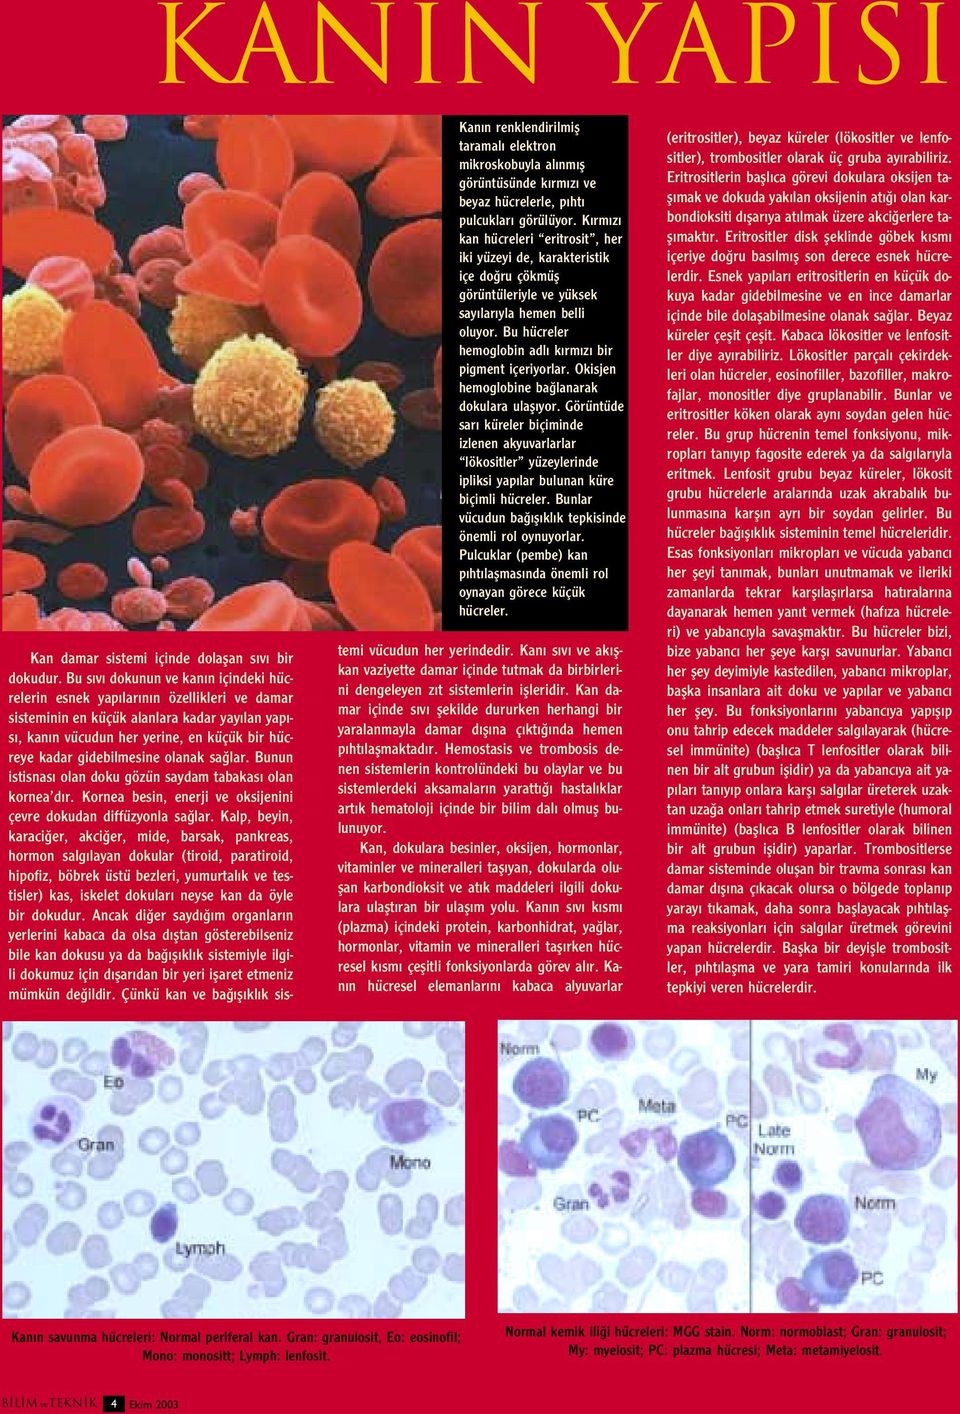 Okisjen hemoglobine ba lanarak dokulara ulafl yor. Görüntüde sar küreler biçiminde izlenen akyuvarlarlar lökositler yüzeylerinde ipliksi yap lar bulunan küre biçimli hücreler.